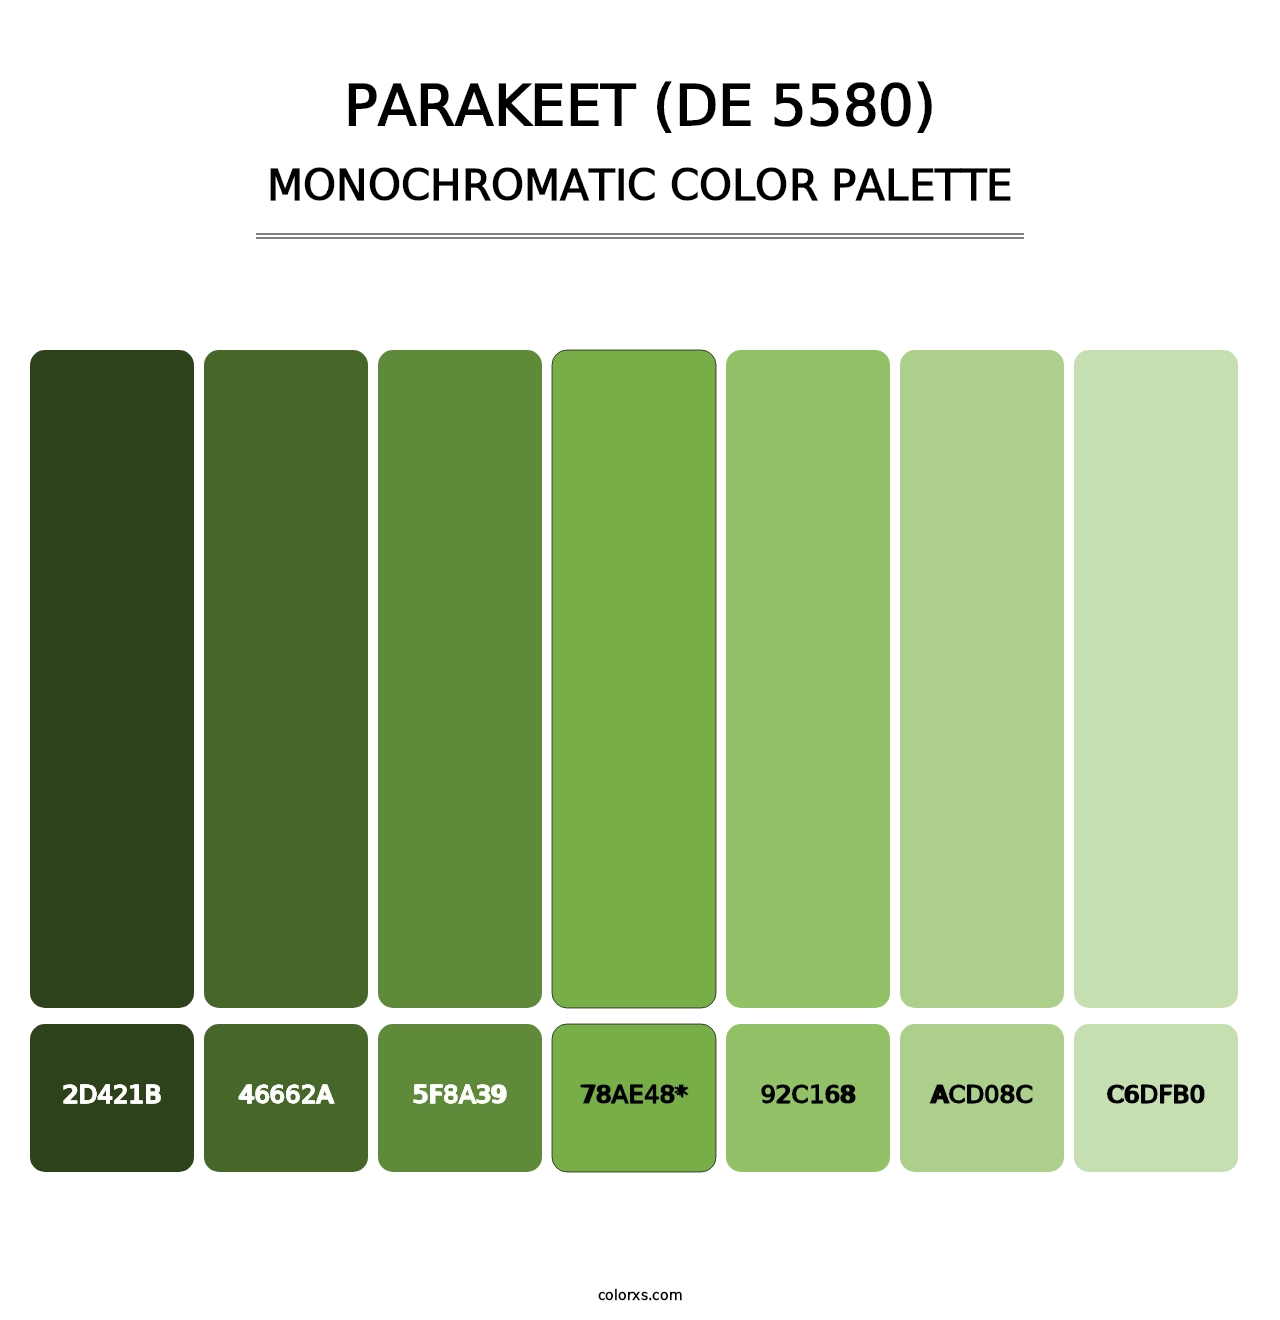 Parakeet (DE 5580) - Monochromatic Color Palette